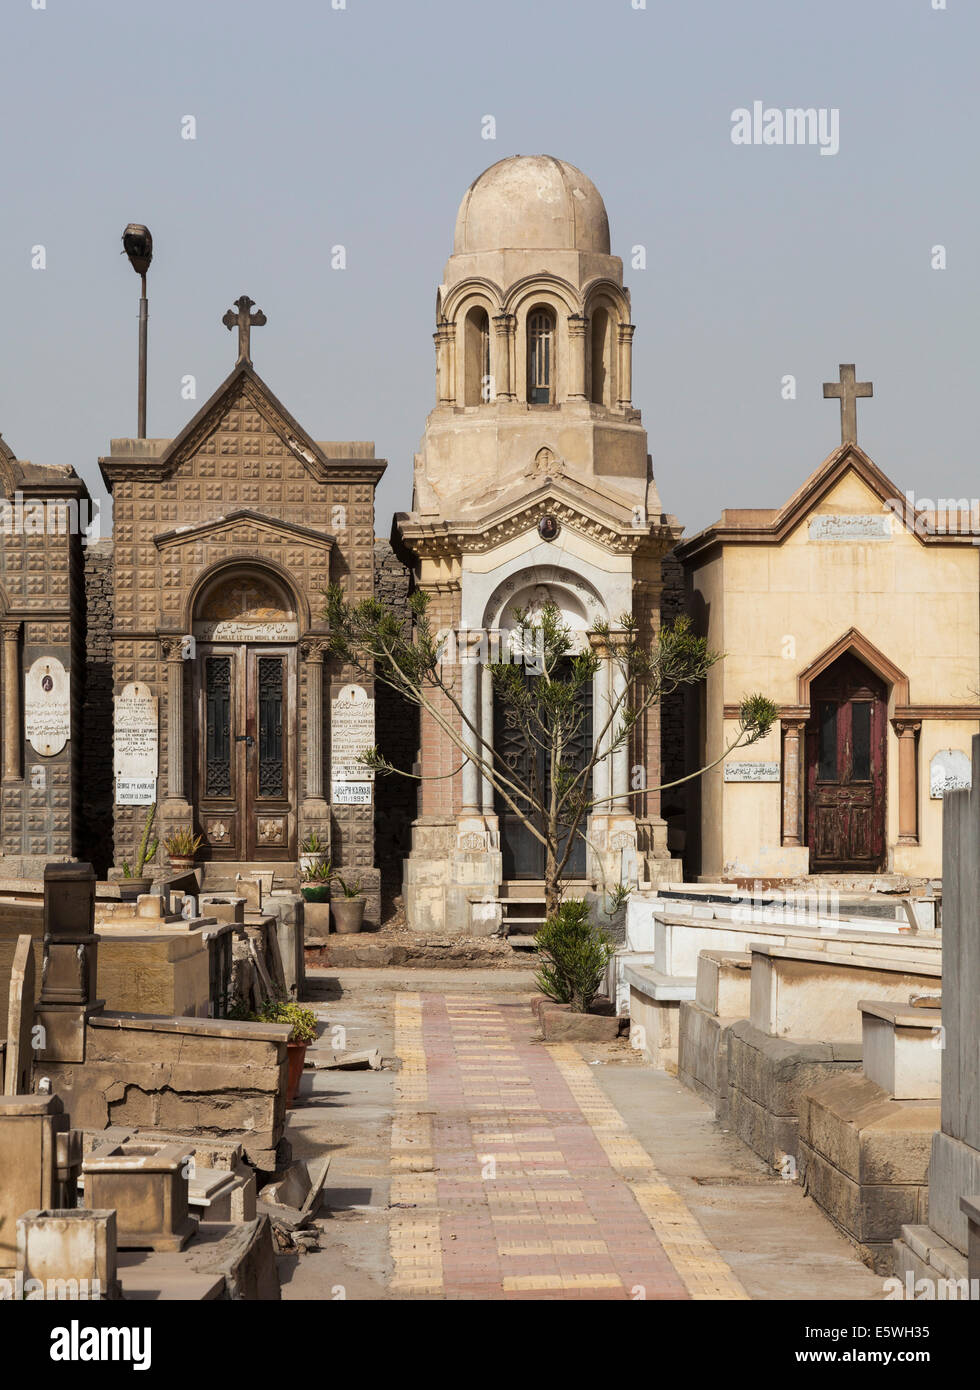 Dans les cryptes cimetière orthodoxe grec en Couvent de St George en copte ou le Vieux Caire, Egypte Banque D'Images